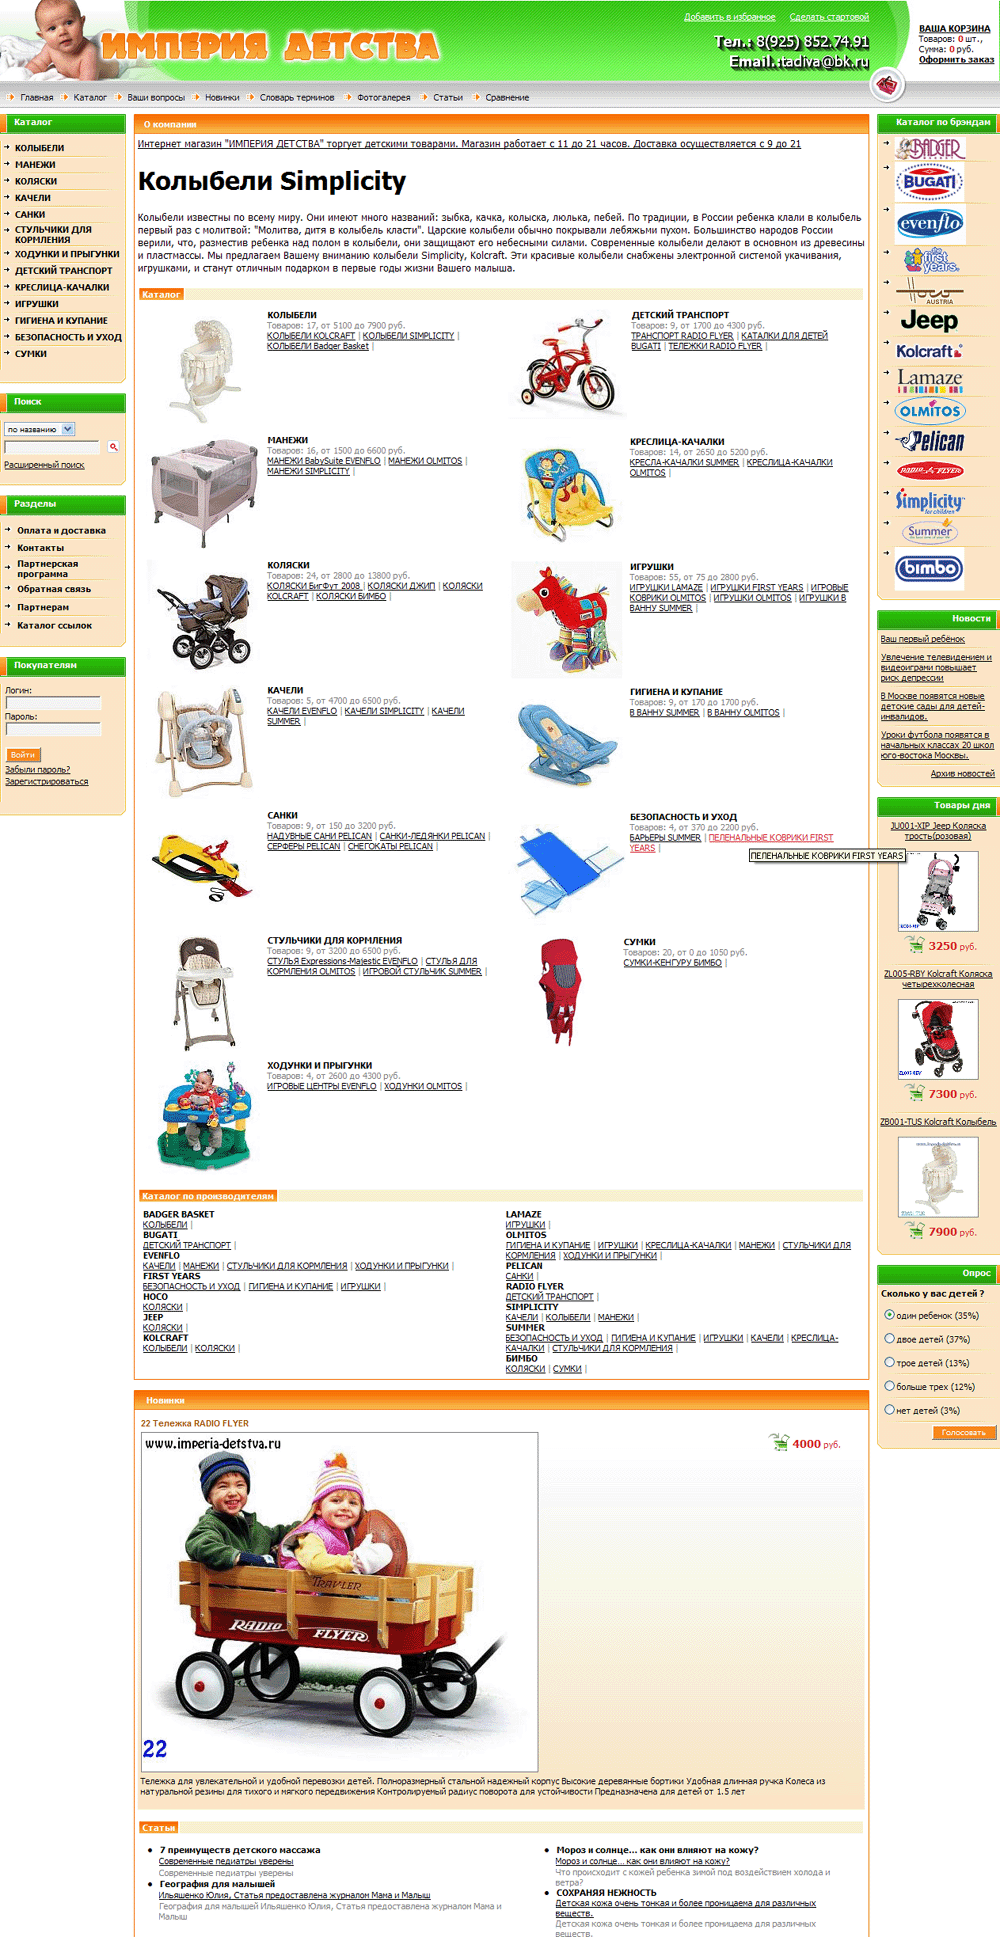 Cозданый интернет-магазин детских товаров Империя детства